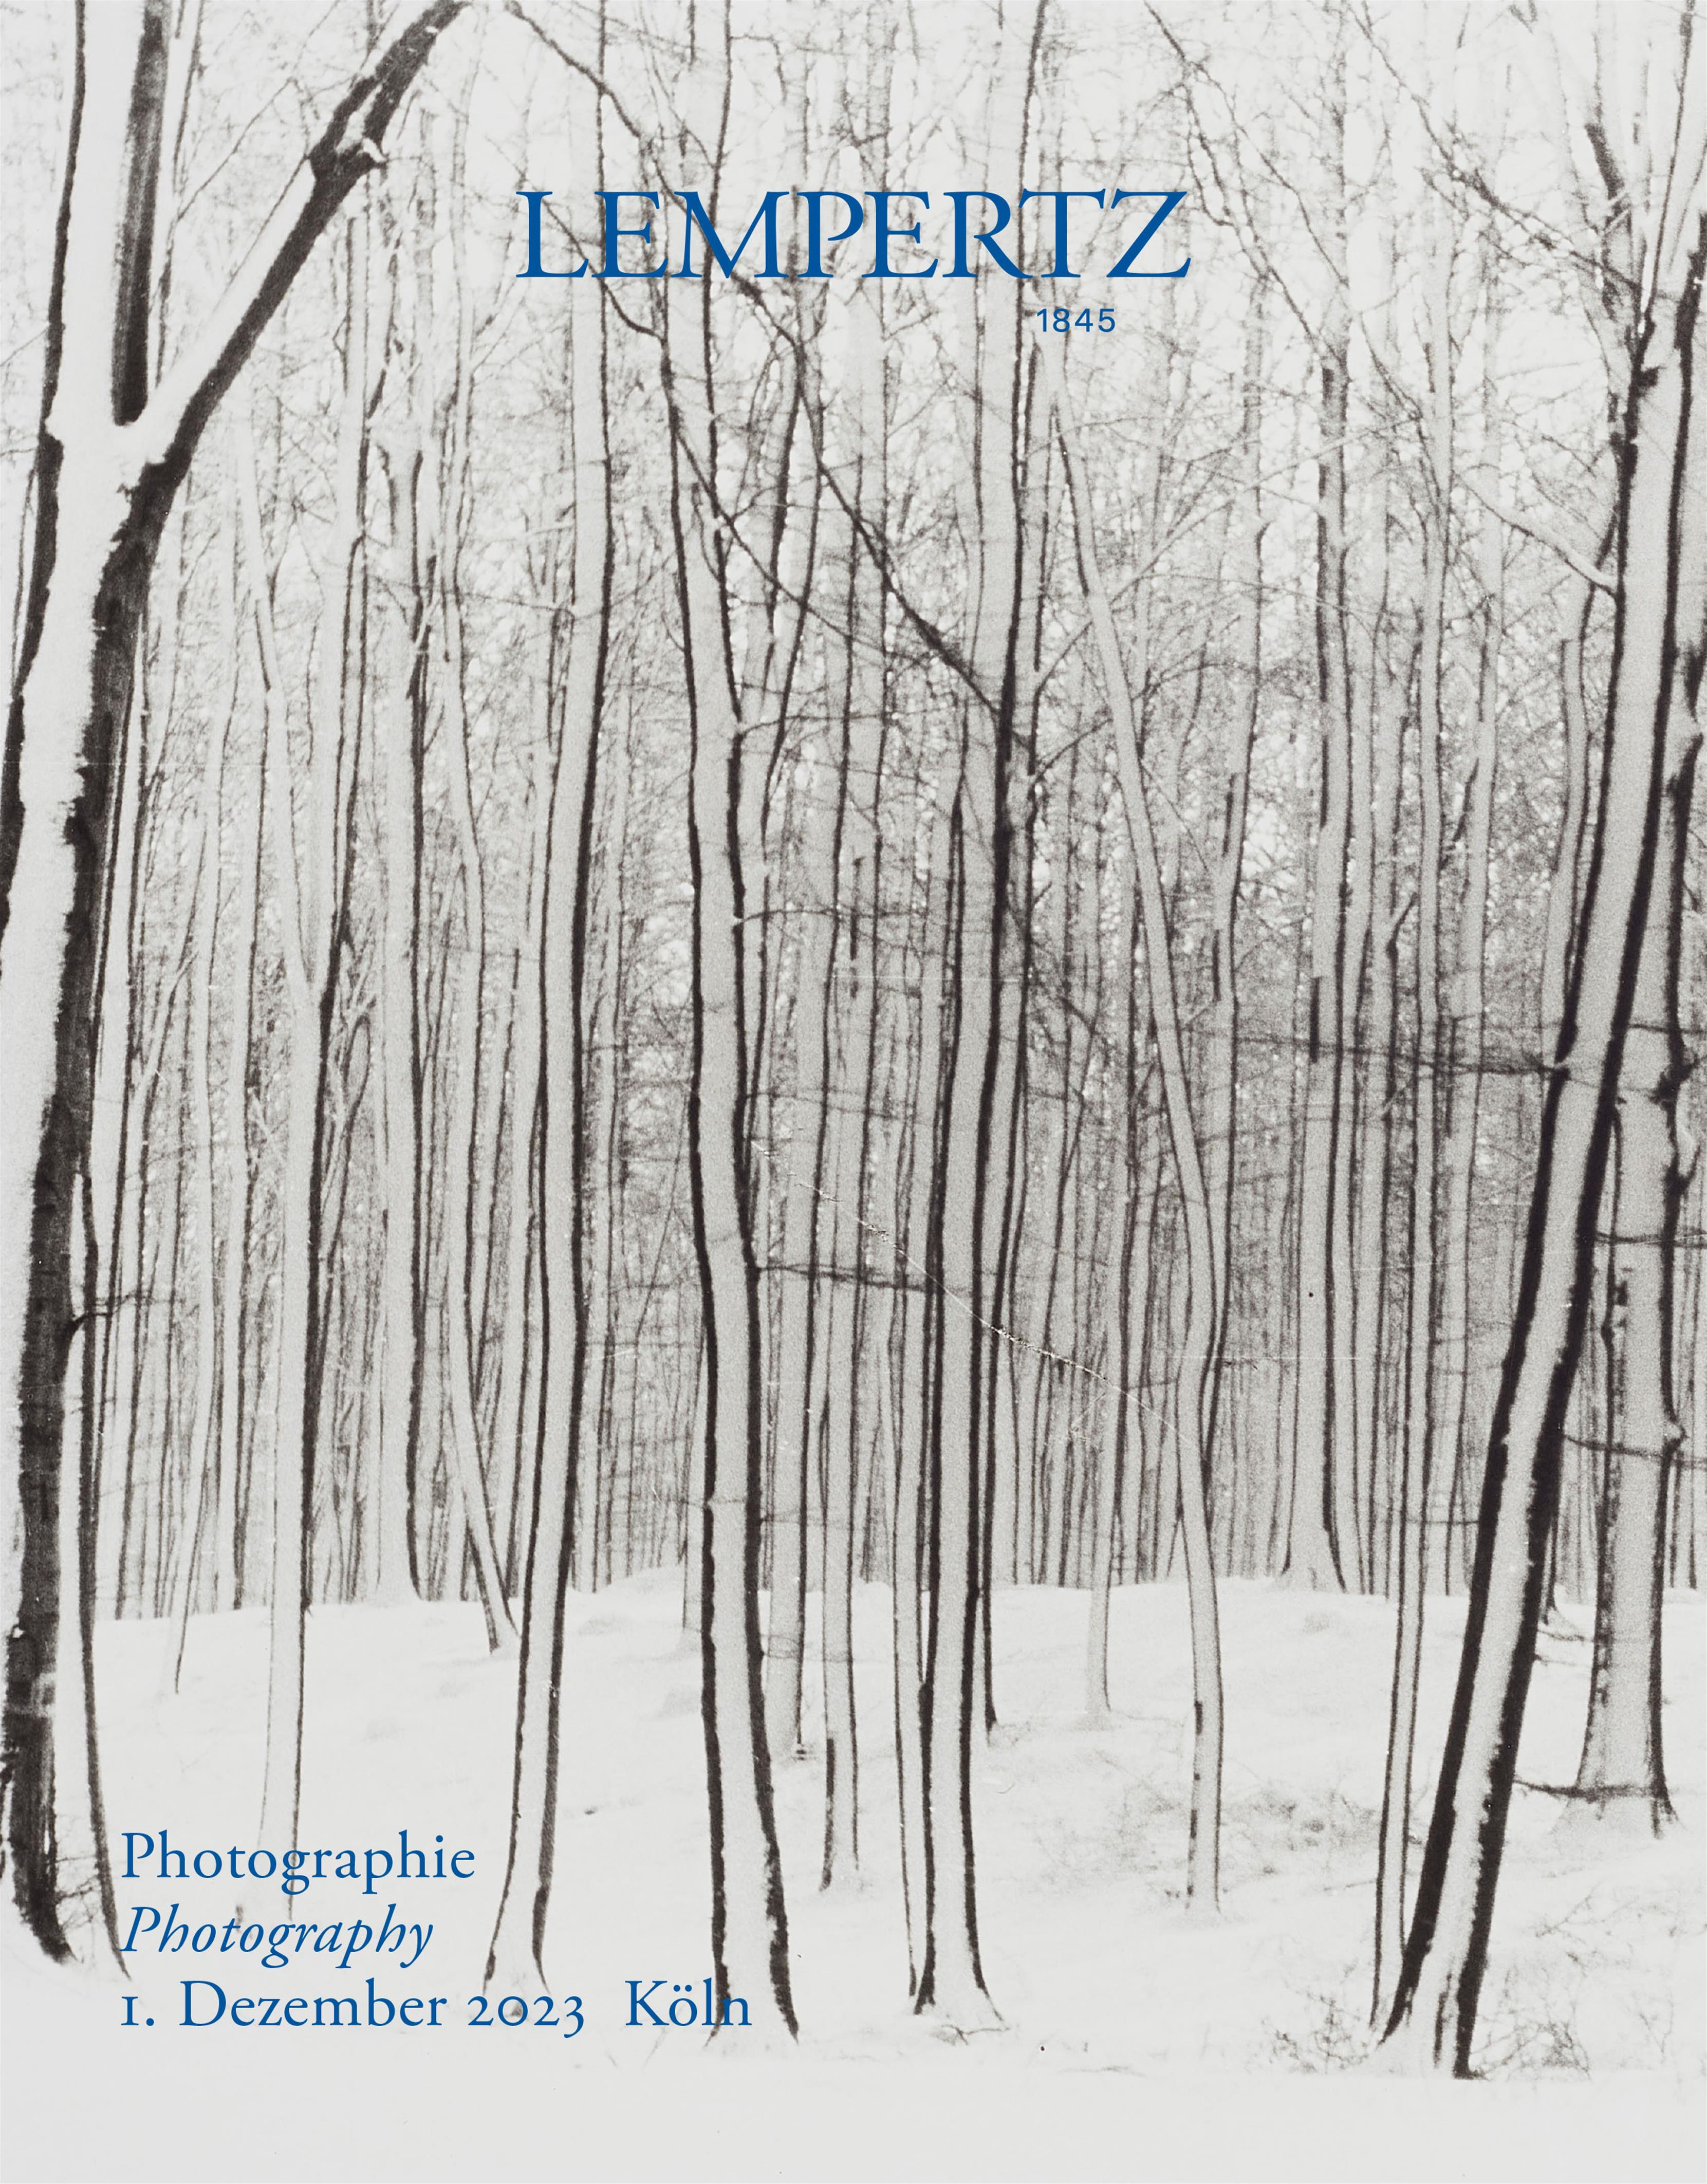 Auktionskatalog - Photographie - Online Katalog - Auktion 1232 – Ersteigern Sie hochwertige Kunst in der nächsten Lempertz-Auktion!